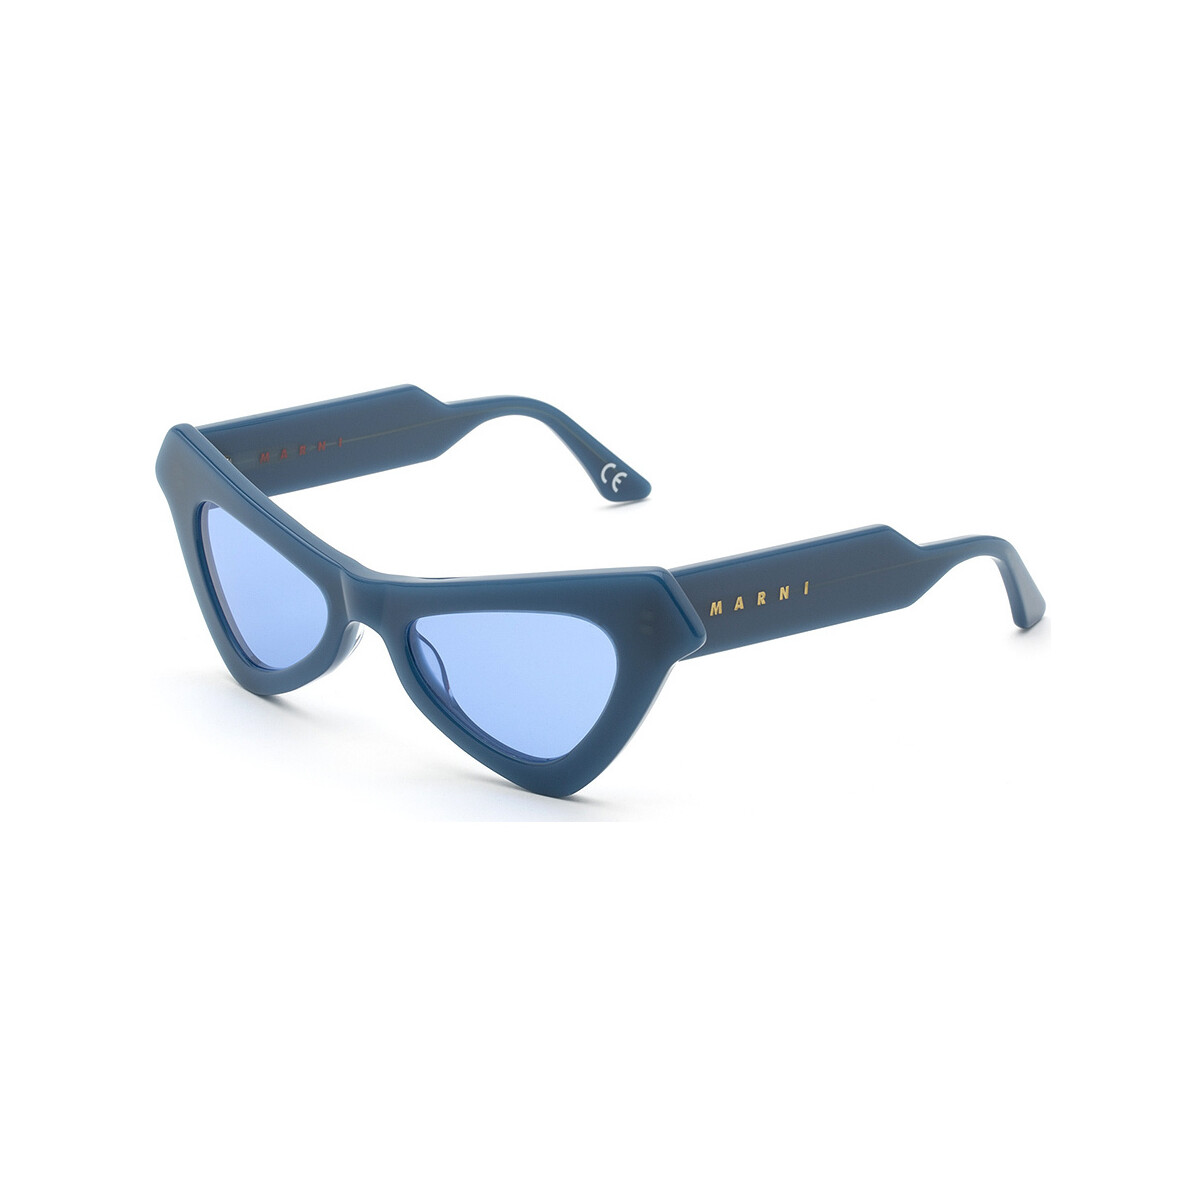 Orologi & Gioielli Occhiali da sole Marni Fairy Pools Occhiali da sole, Blu/Blu, 50 mm Blu